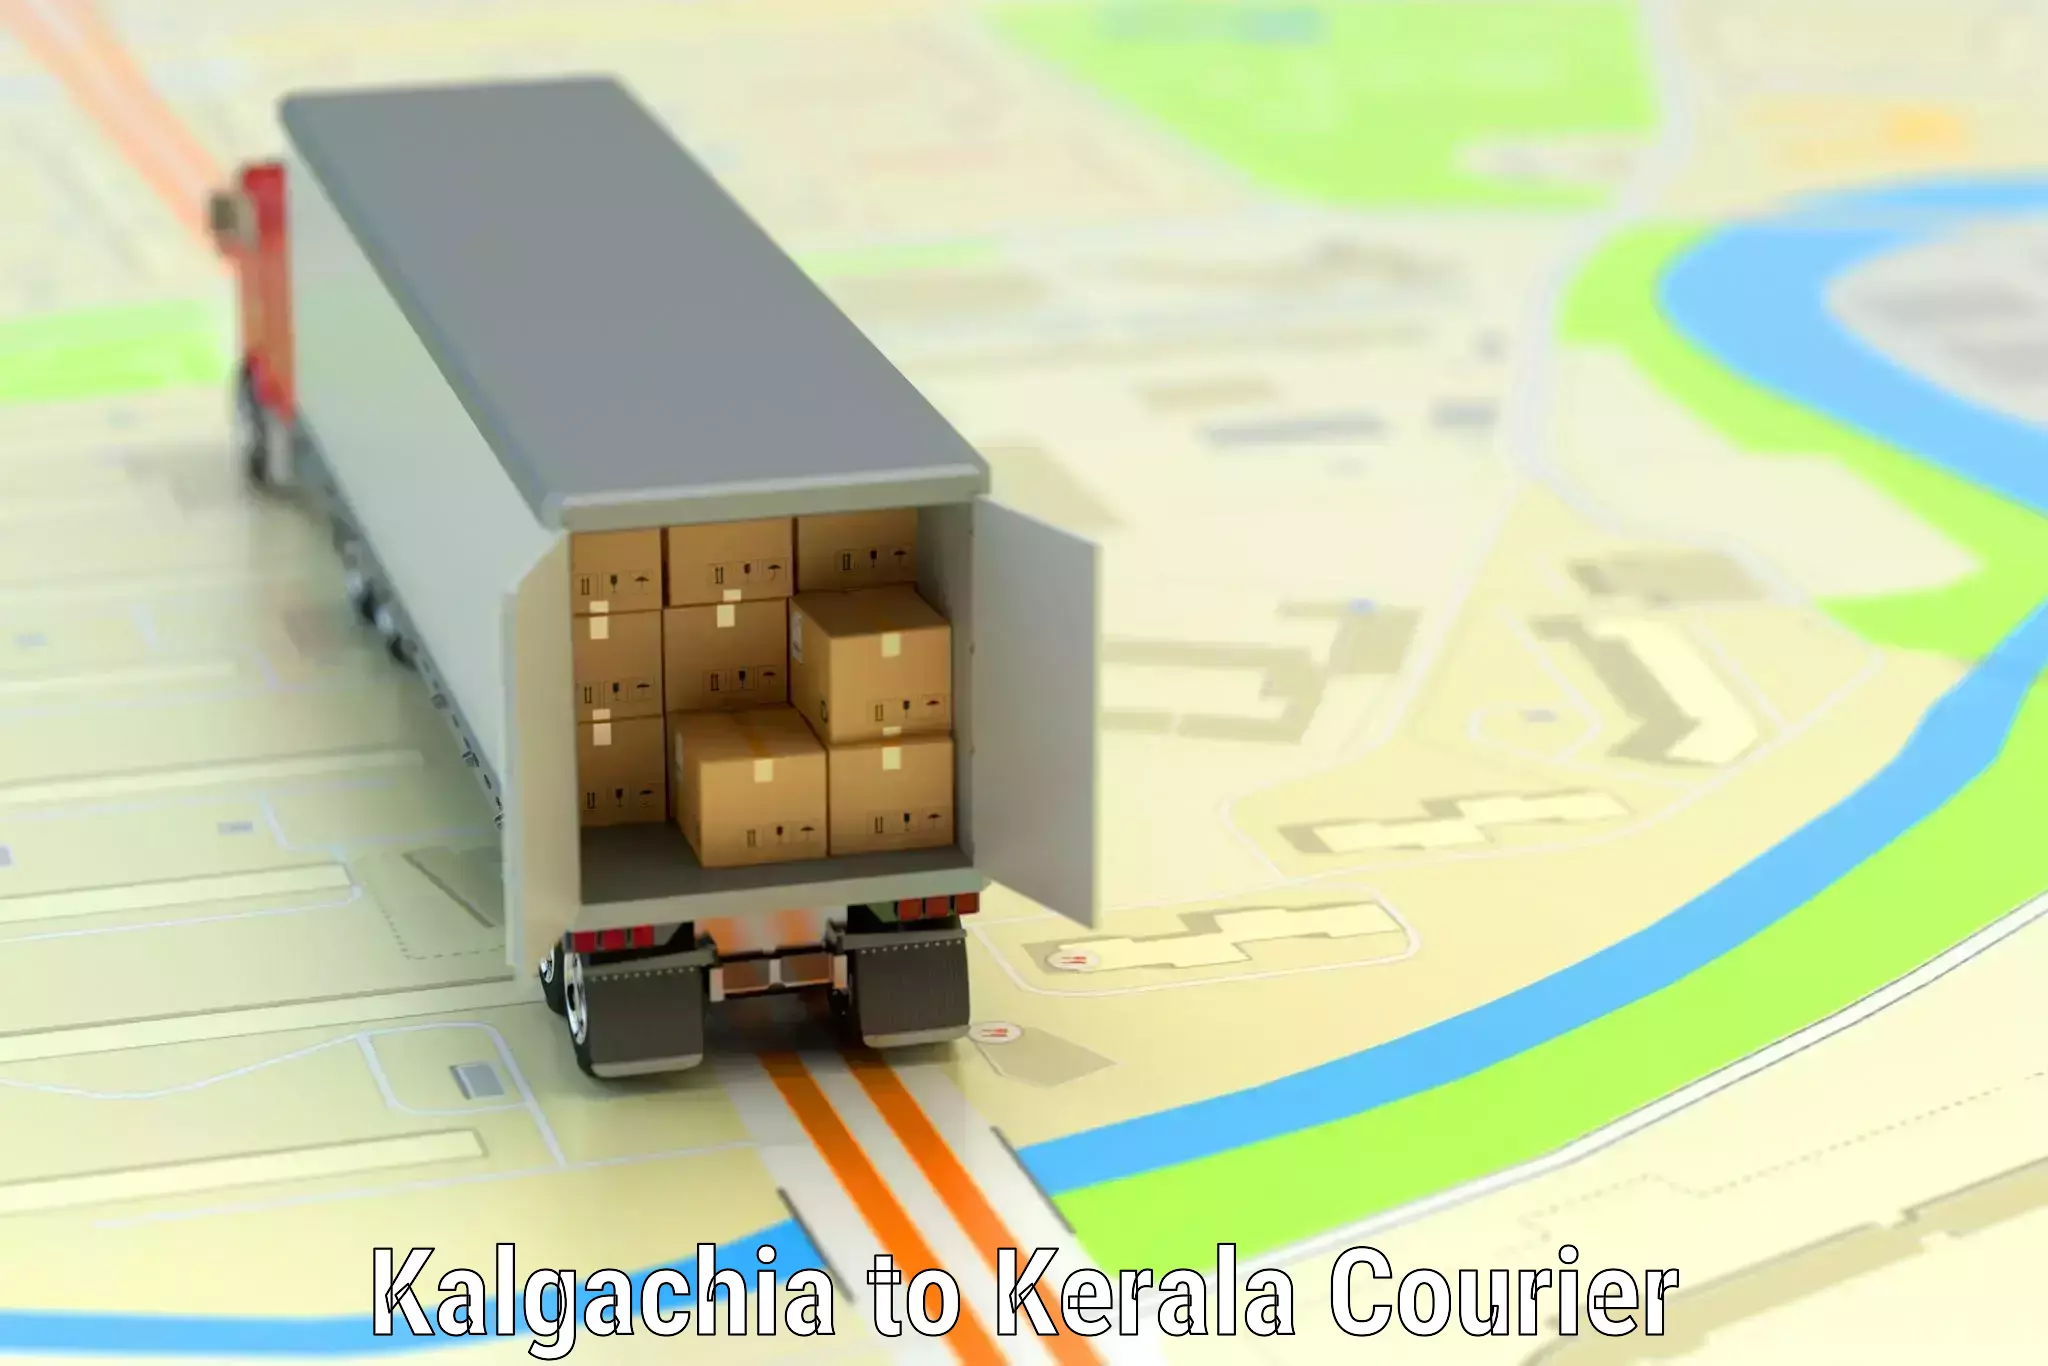 Luggage transport service Kalgachia to Kerala